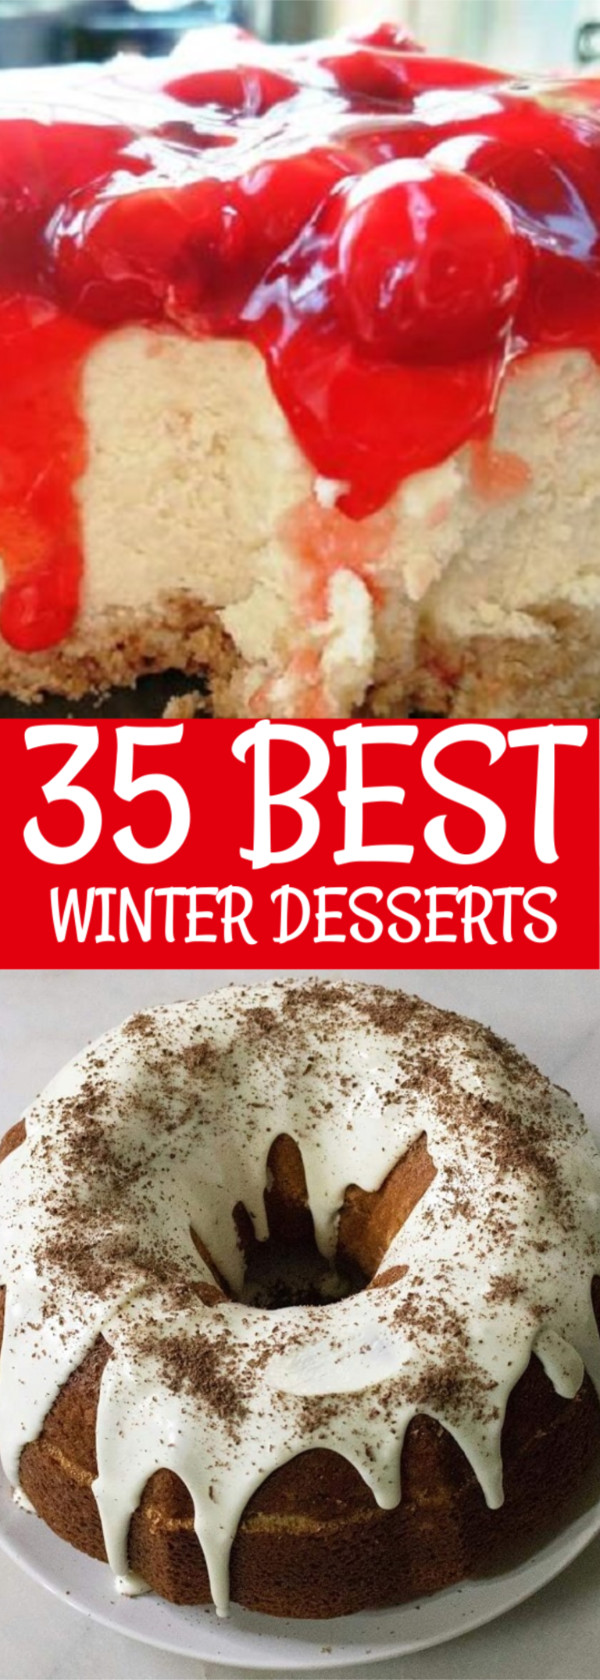 Best Winter Desserts
 35 of the Best Winter Desserts